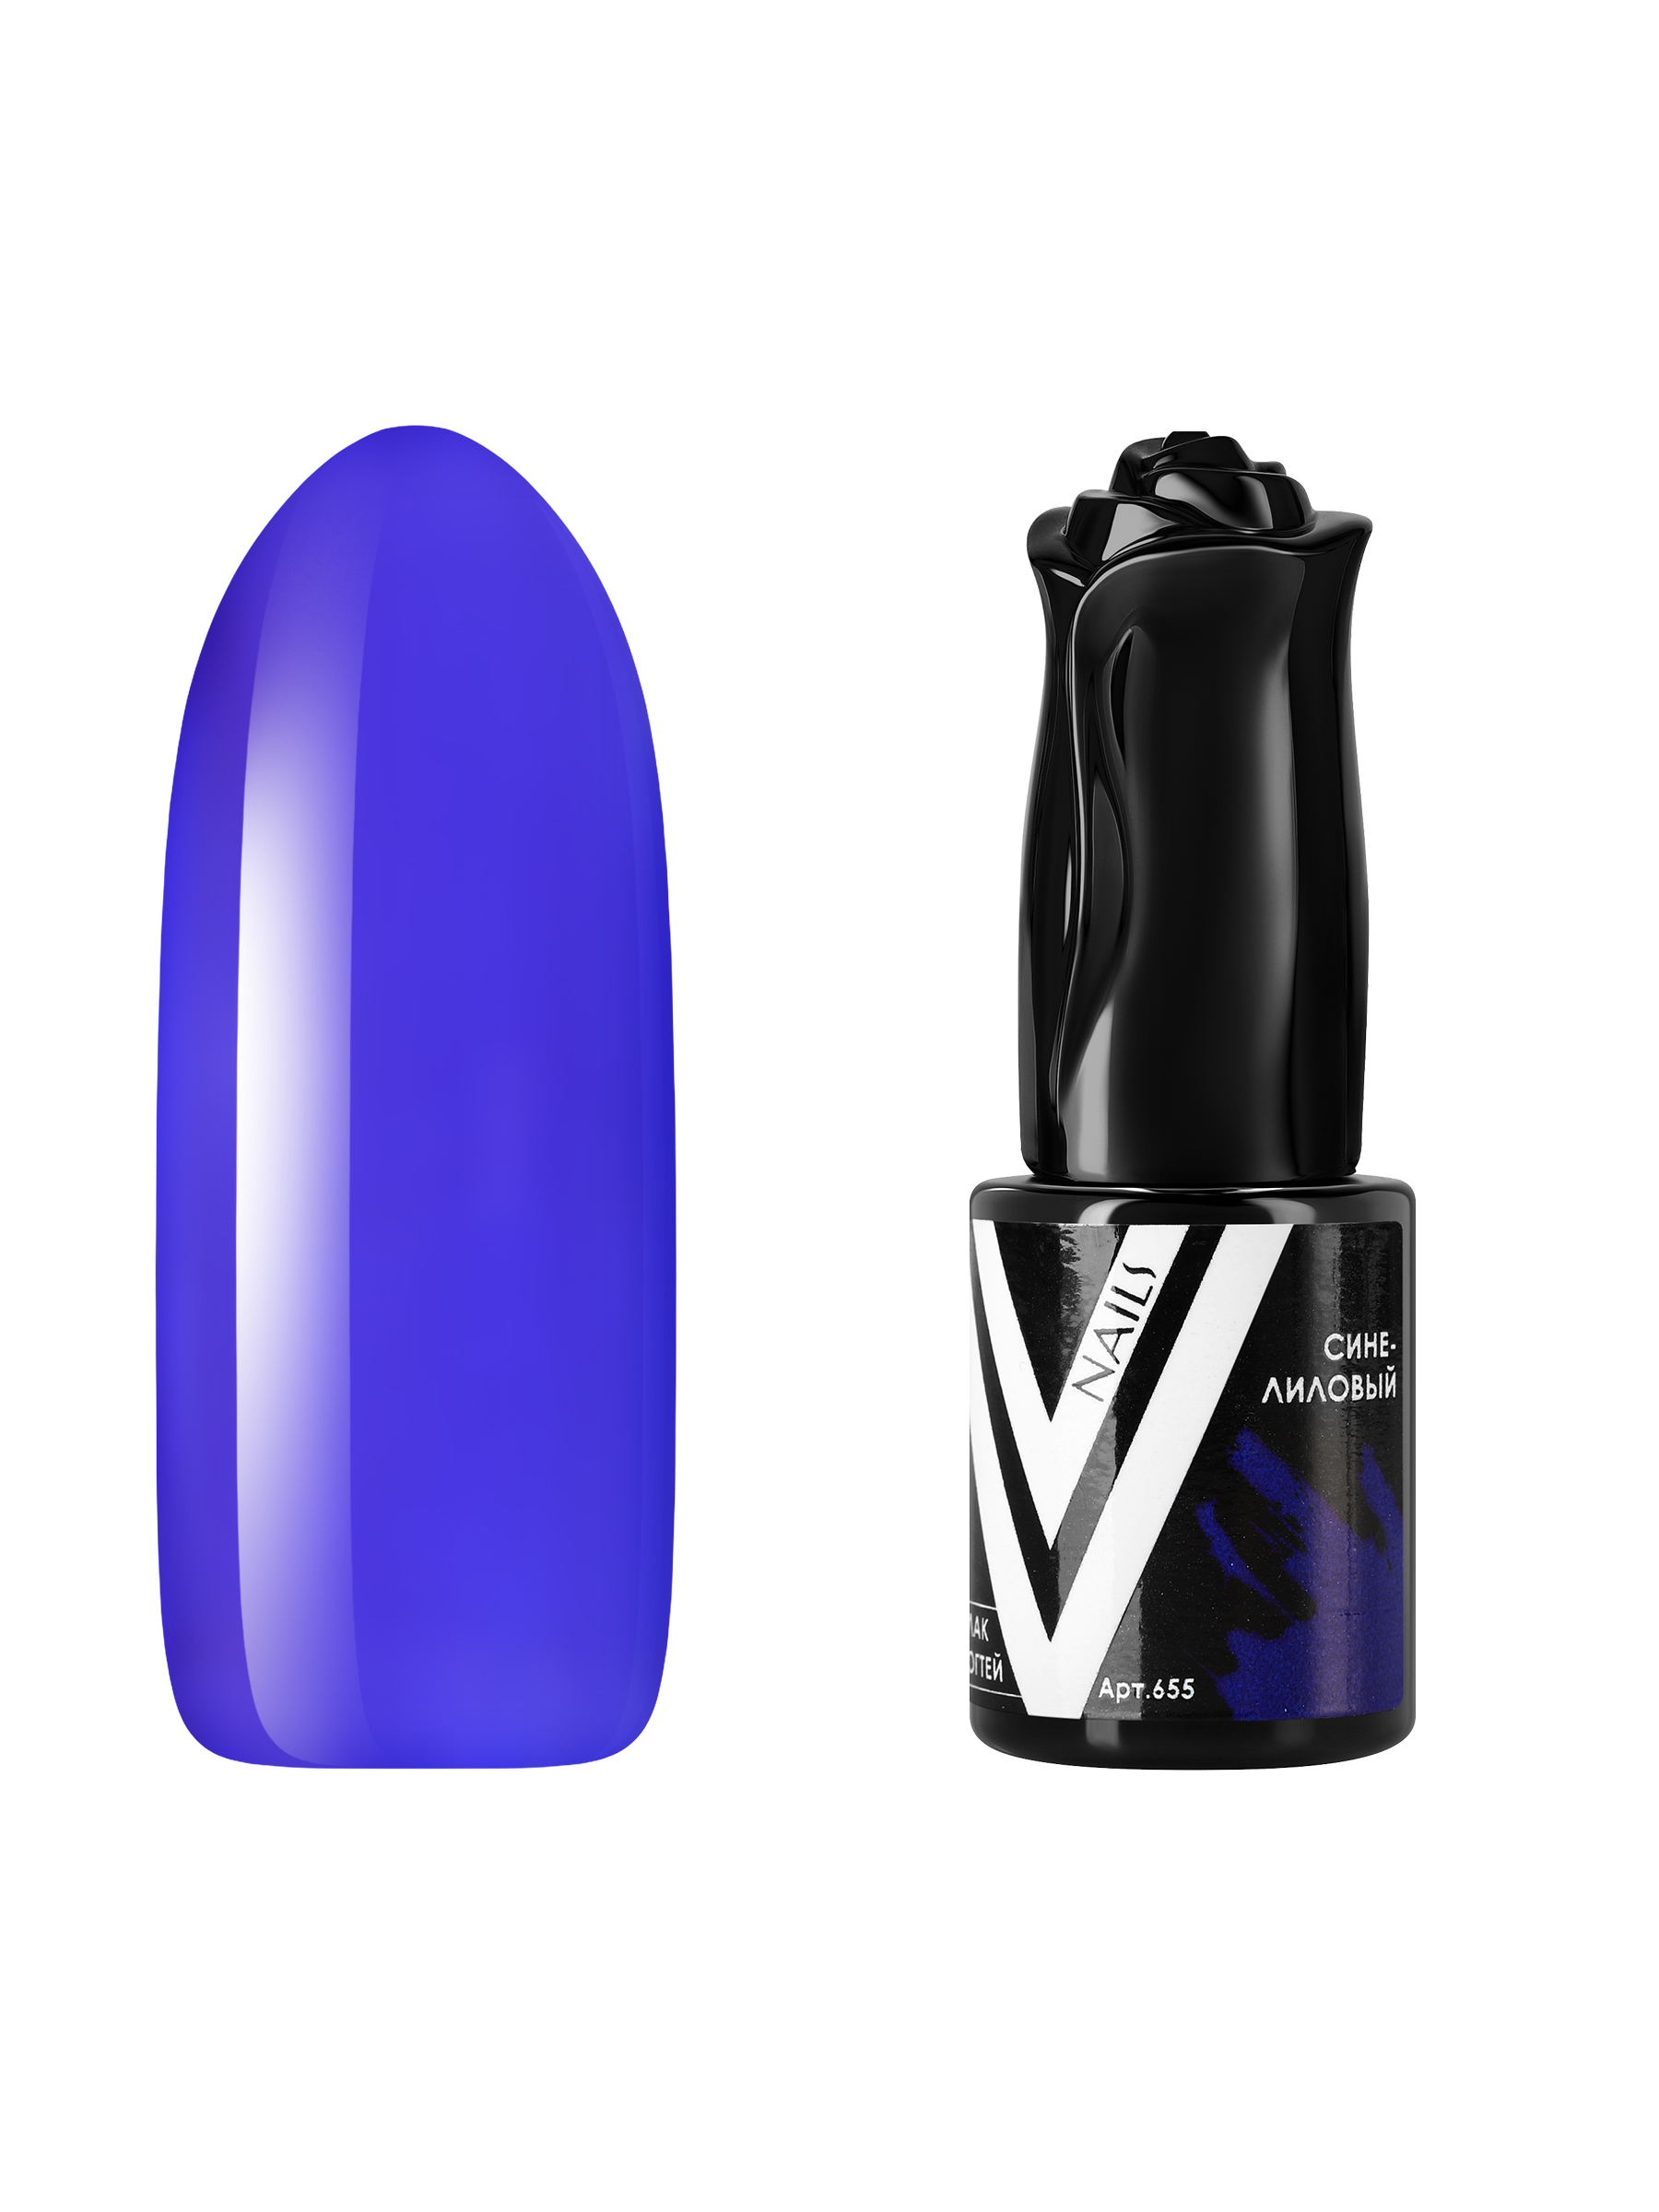 Гель-лак витражный Vogue Nails для аквариумного дизайна прозрачный фиолетовый синий, 10 мл сачок аквариумный синий 10 см